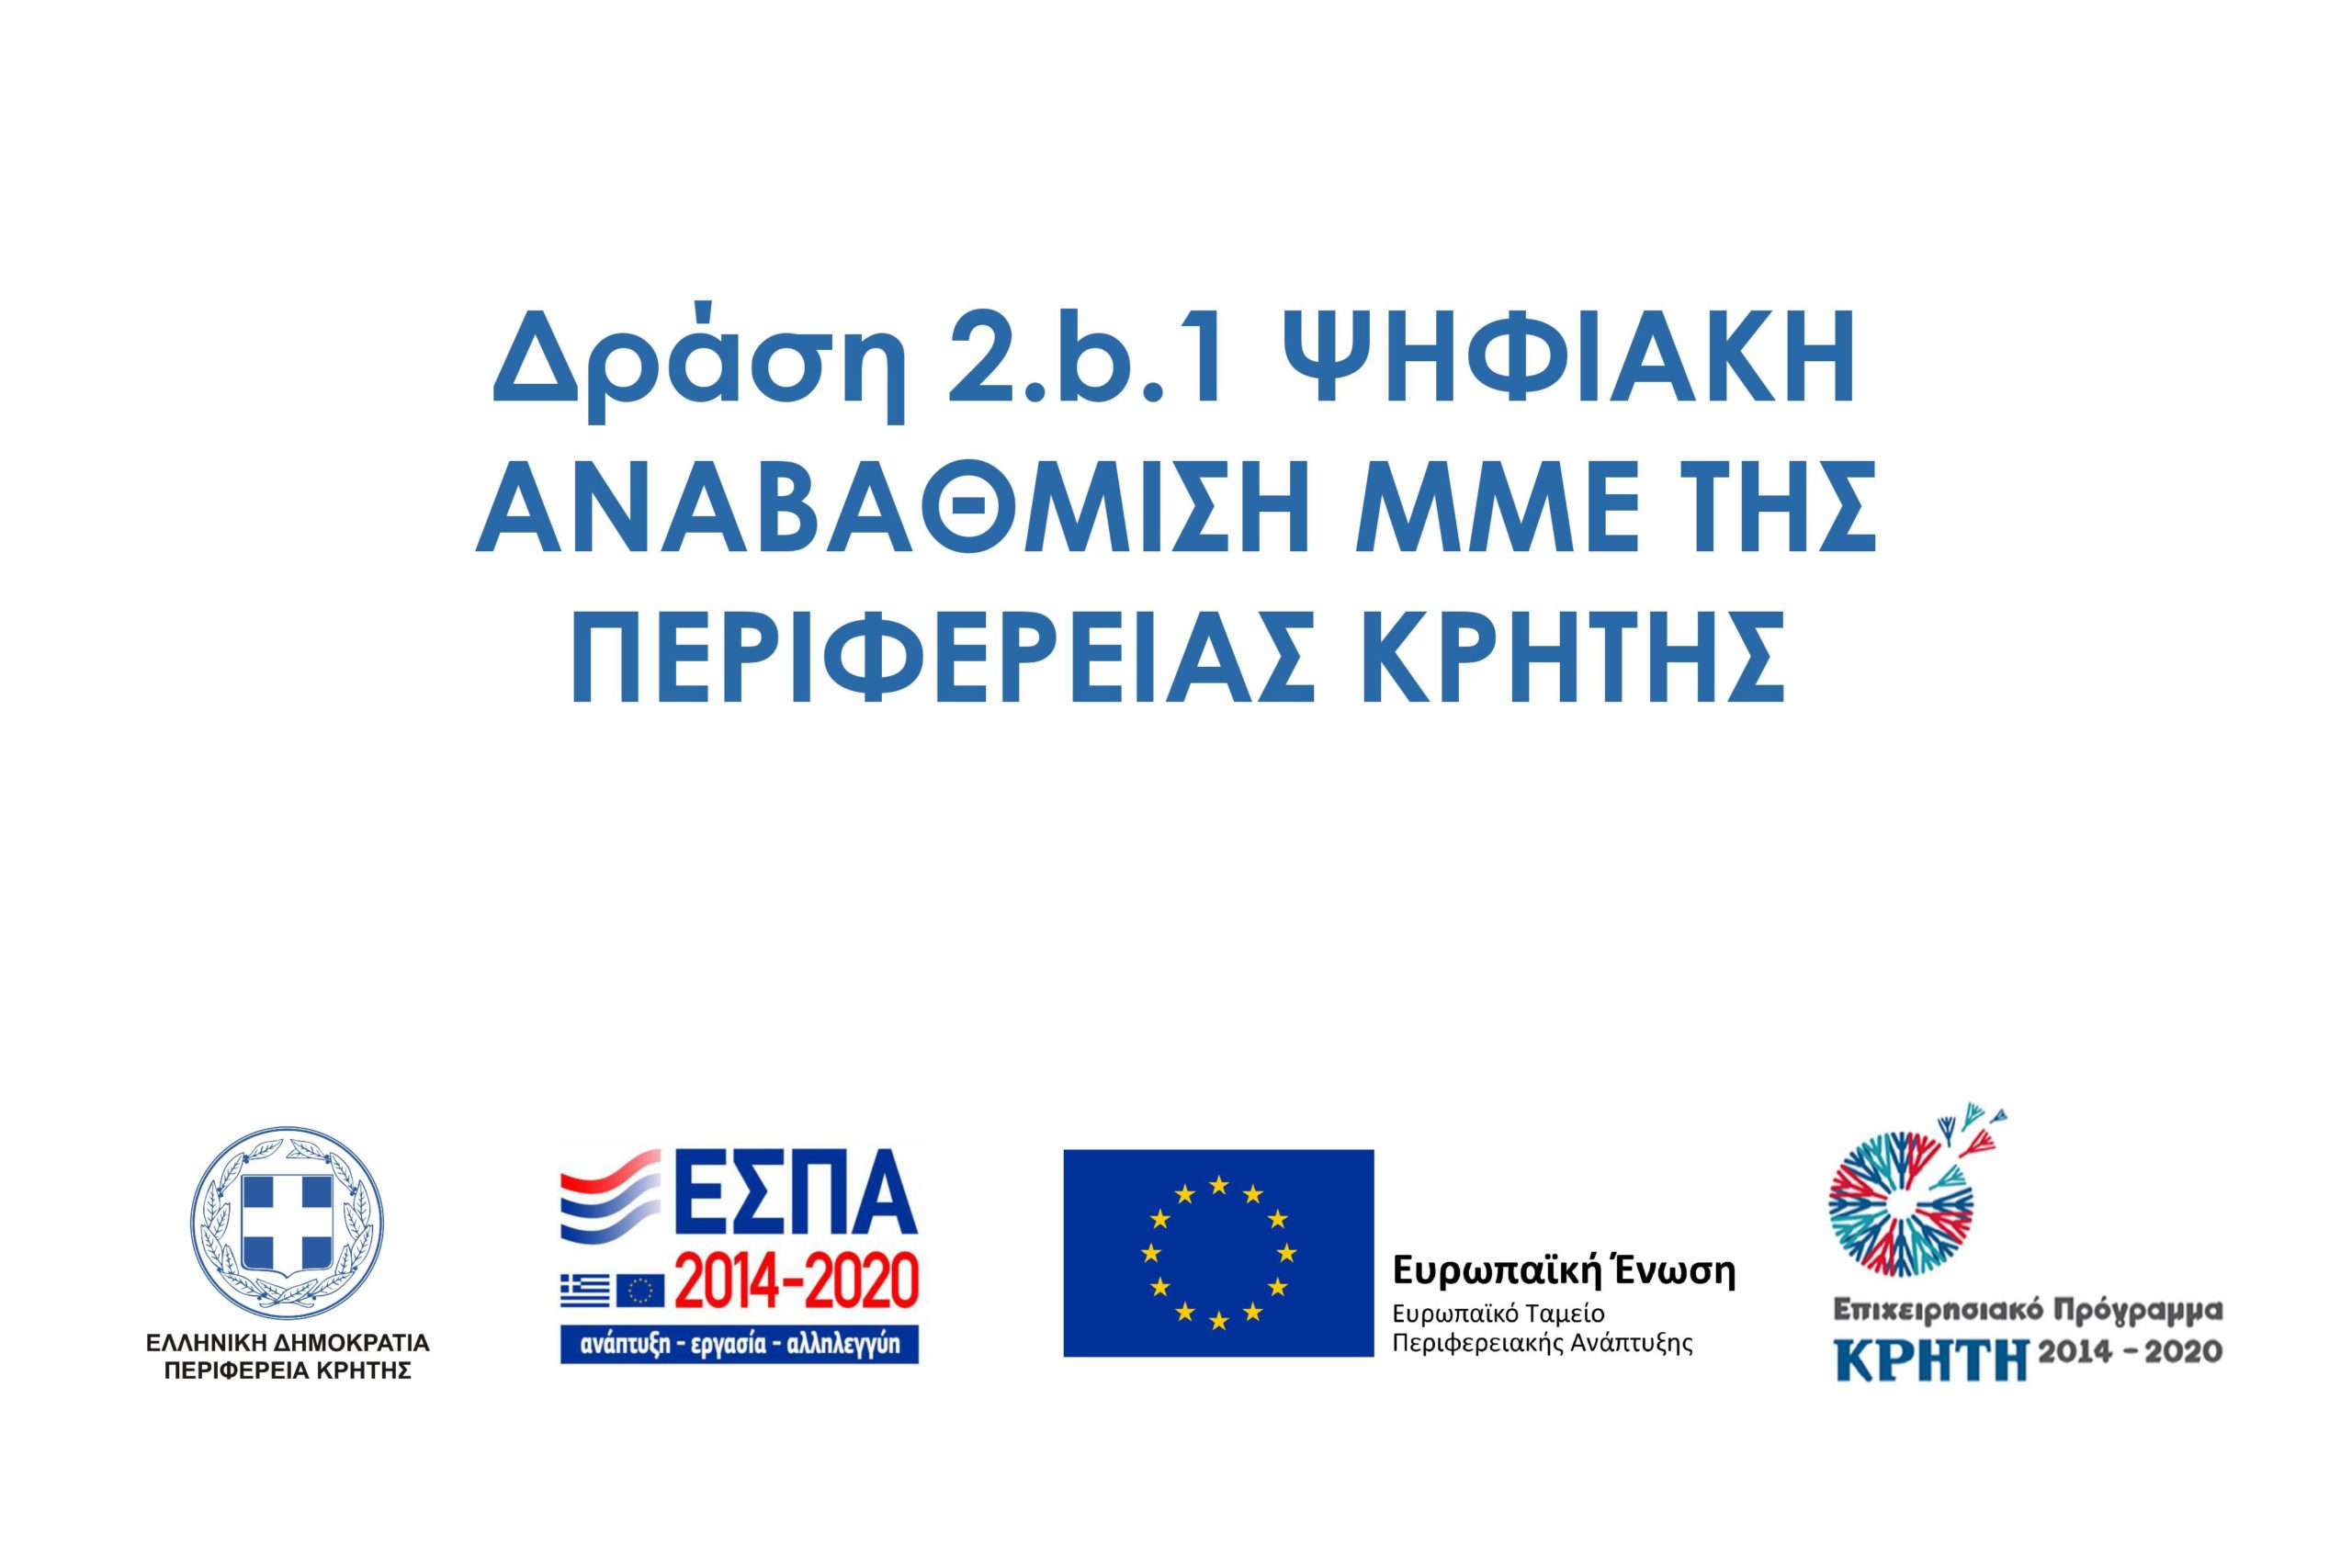 Προγραμματα 2014-2020 / Ψηφιακή Αναβάθμιση ΜΜΕ της Περιφέρειας Κρήτης